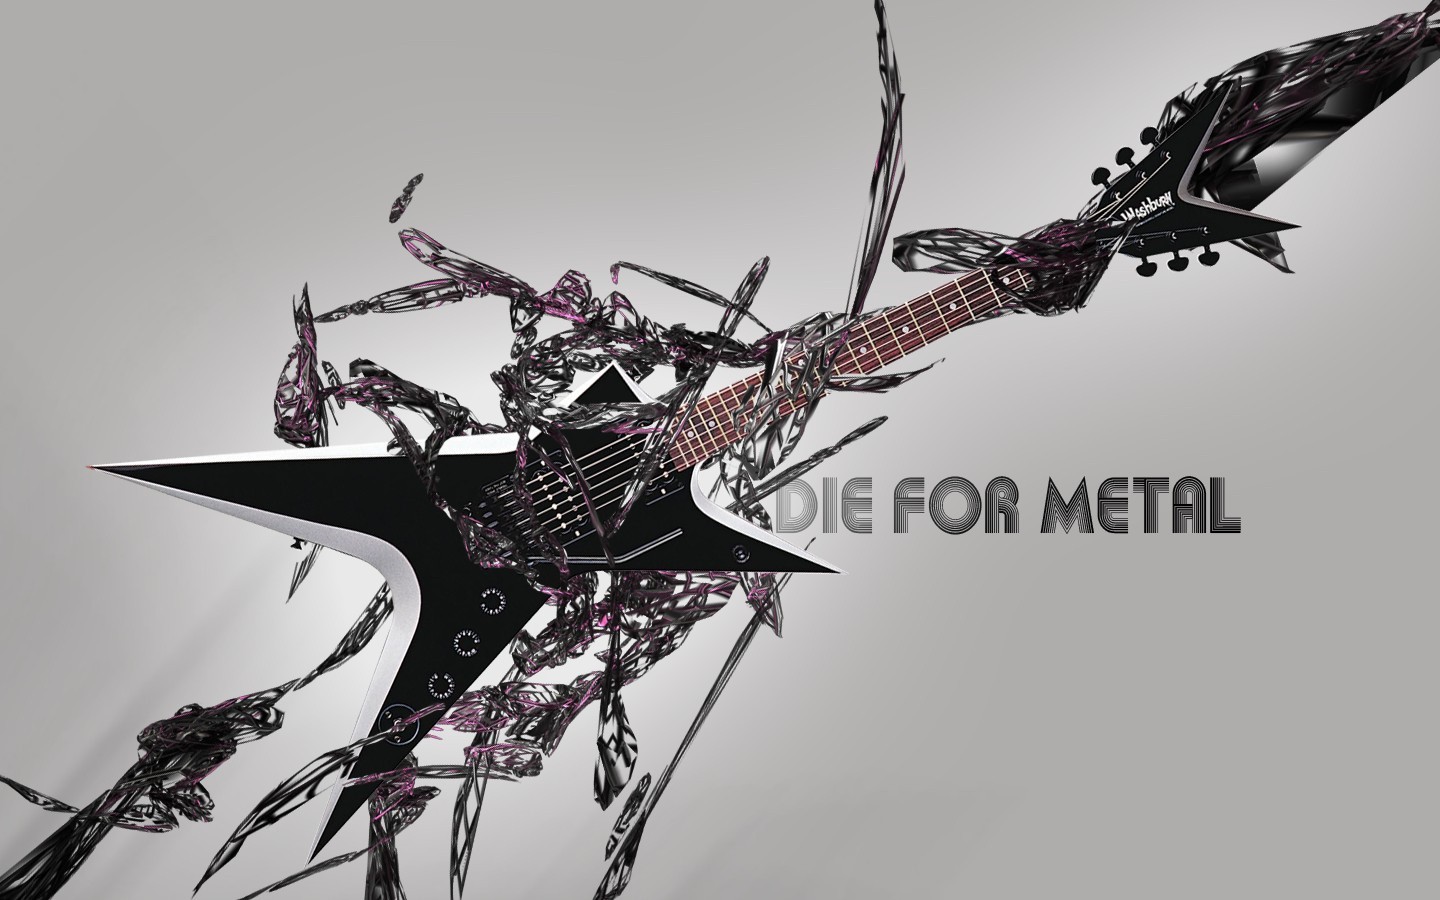 45+] Heavy Metal Music Wallpaper - WallpaperSafari